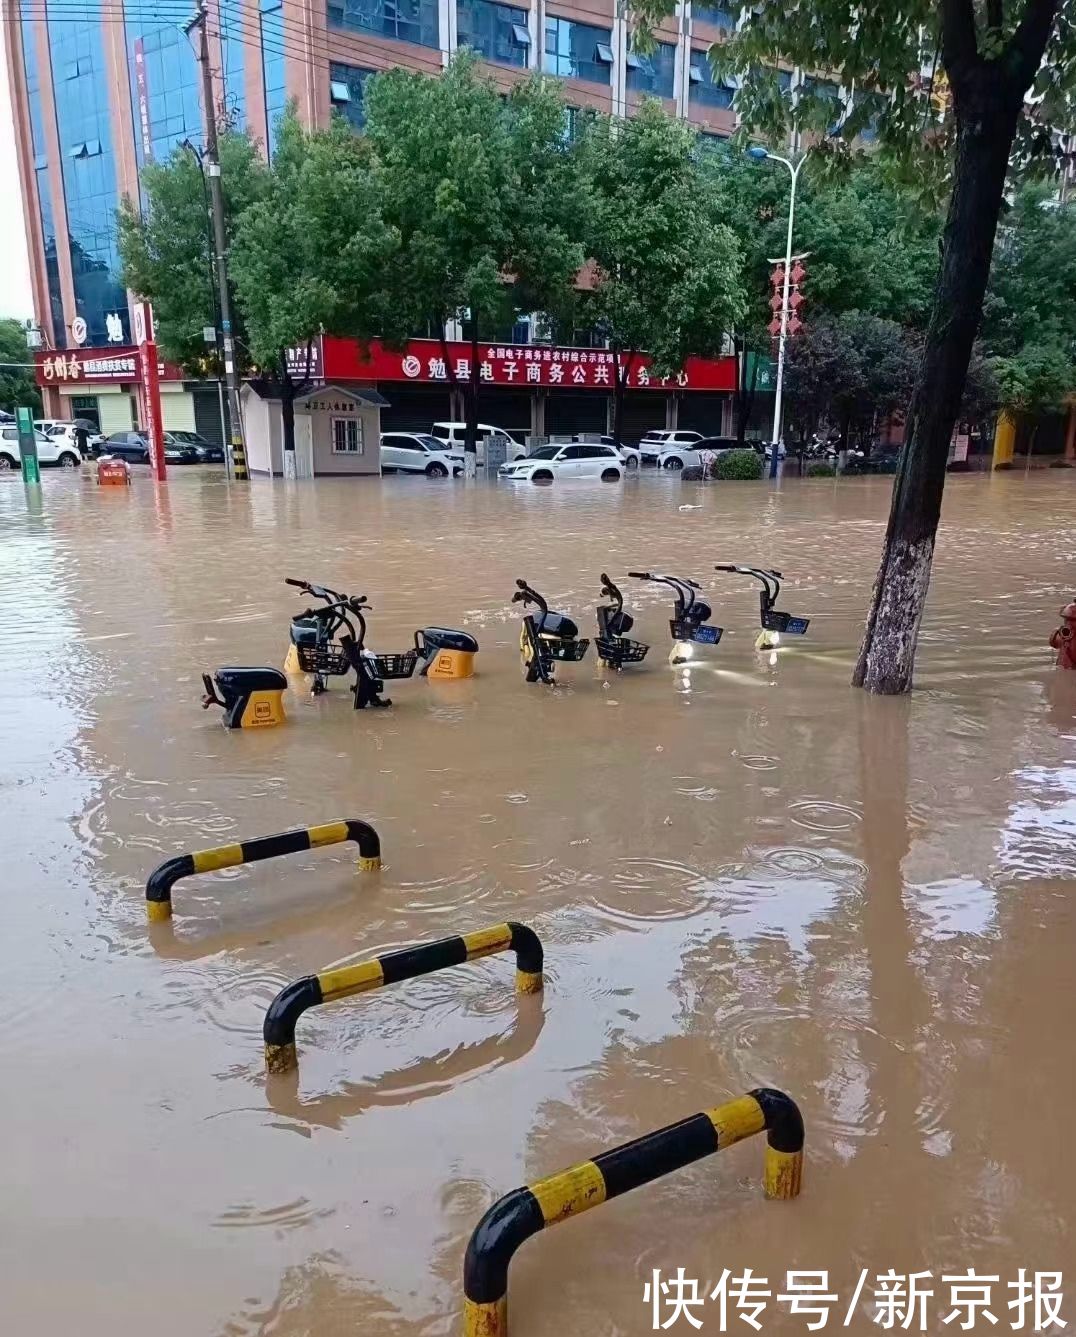 陕西|新闻8点见丨暴雨致陕西勉县上万人受灾 城区积水最深达90厘米